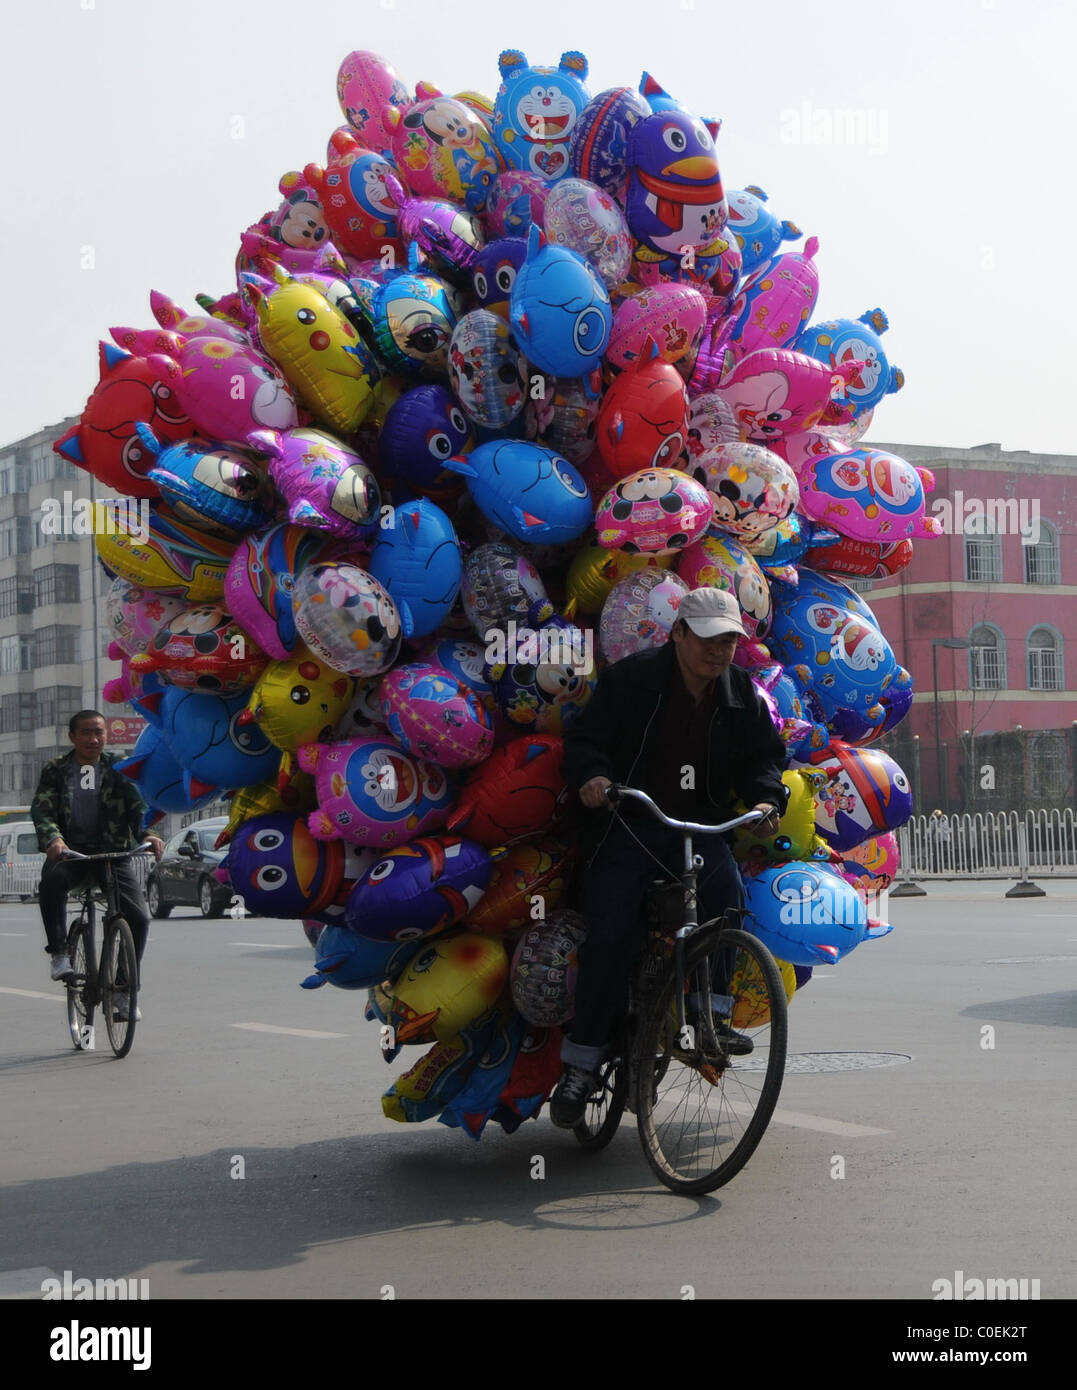 Ballonfahrt A Ballon-Verkäufer in China begeisterte Zuschauer durch sein  Fahrrad mit Hunderten von Helium gefüllte Ballons zu laden. Die  Stockfotografie - Alamy